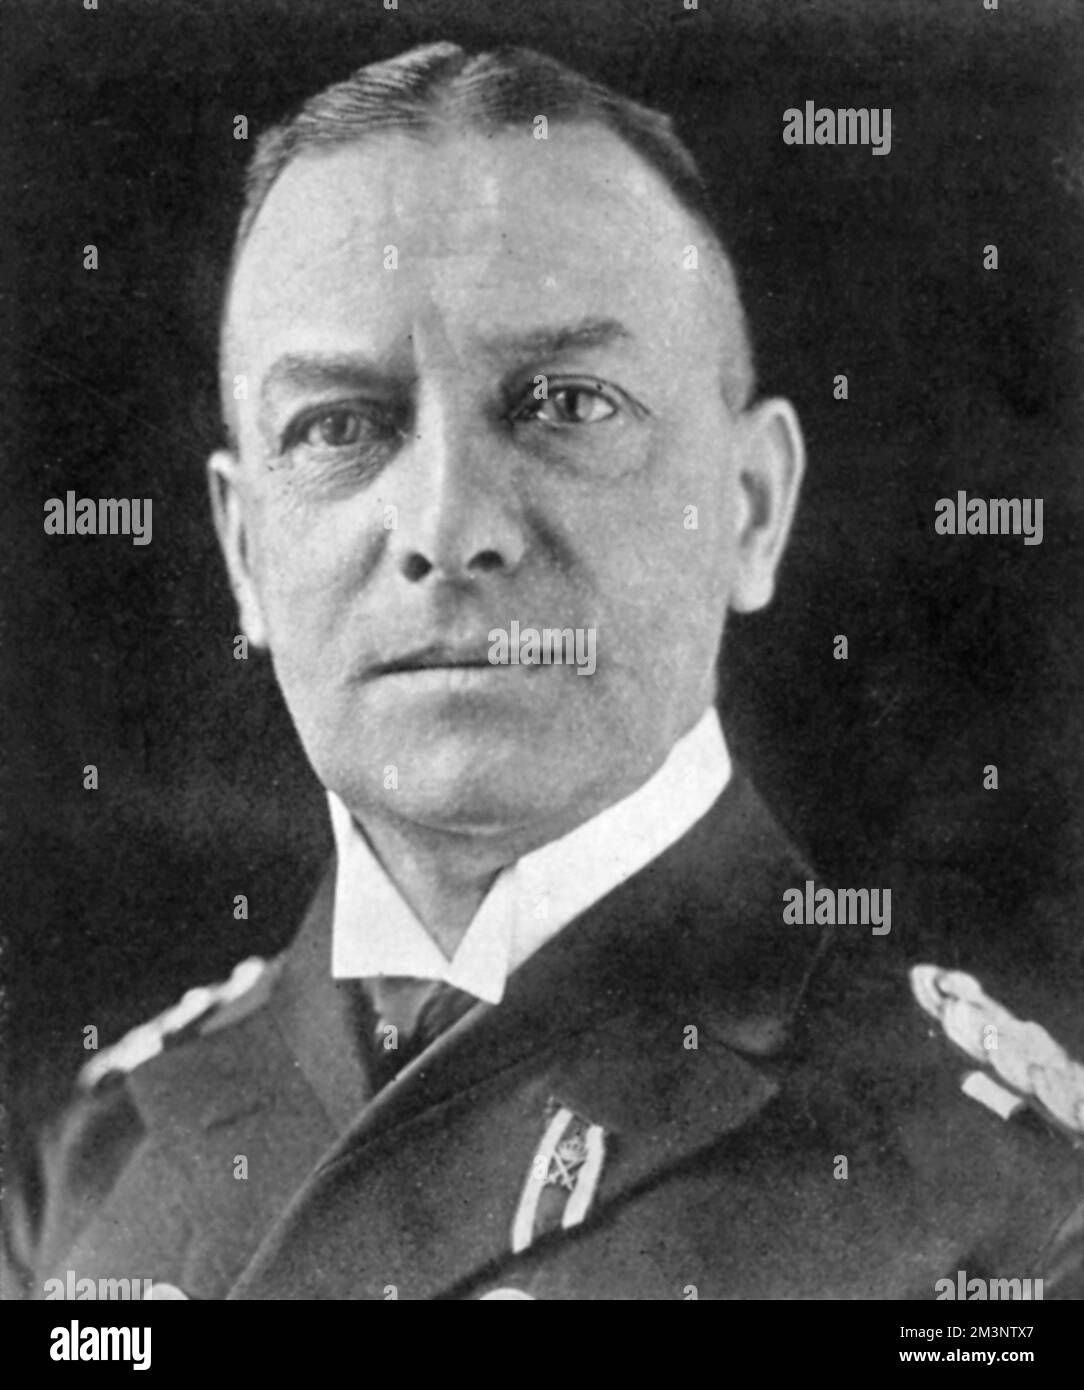 Erich Johann Albert Raeder (24 de abril de 1876 6 de noviembre de 1960) Líder naval alemán en Alemania antes y durante la Segunda Guerra Mundial Raeder alcanzó el más alto rankthat naval posible de Gro&#x7e1;dmiral (Gran Almirante) en 1939, convirtiéndose en la primera persona en mantener ese rango desde Alfred von Tirpitz. Raeder dirigió la Kriegsmarine (Armada Alemana) durante la primera mitad de la guerra, pero renunció en 1943 y fue reemplazado por Karl D&#x1aea74;z. Fue condenado a cadena perpetua en los juicios de Nuremberg, pero más tarde fue puesto en libertad. Fecha: 1939 Foto de stock